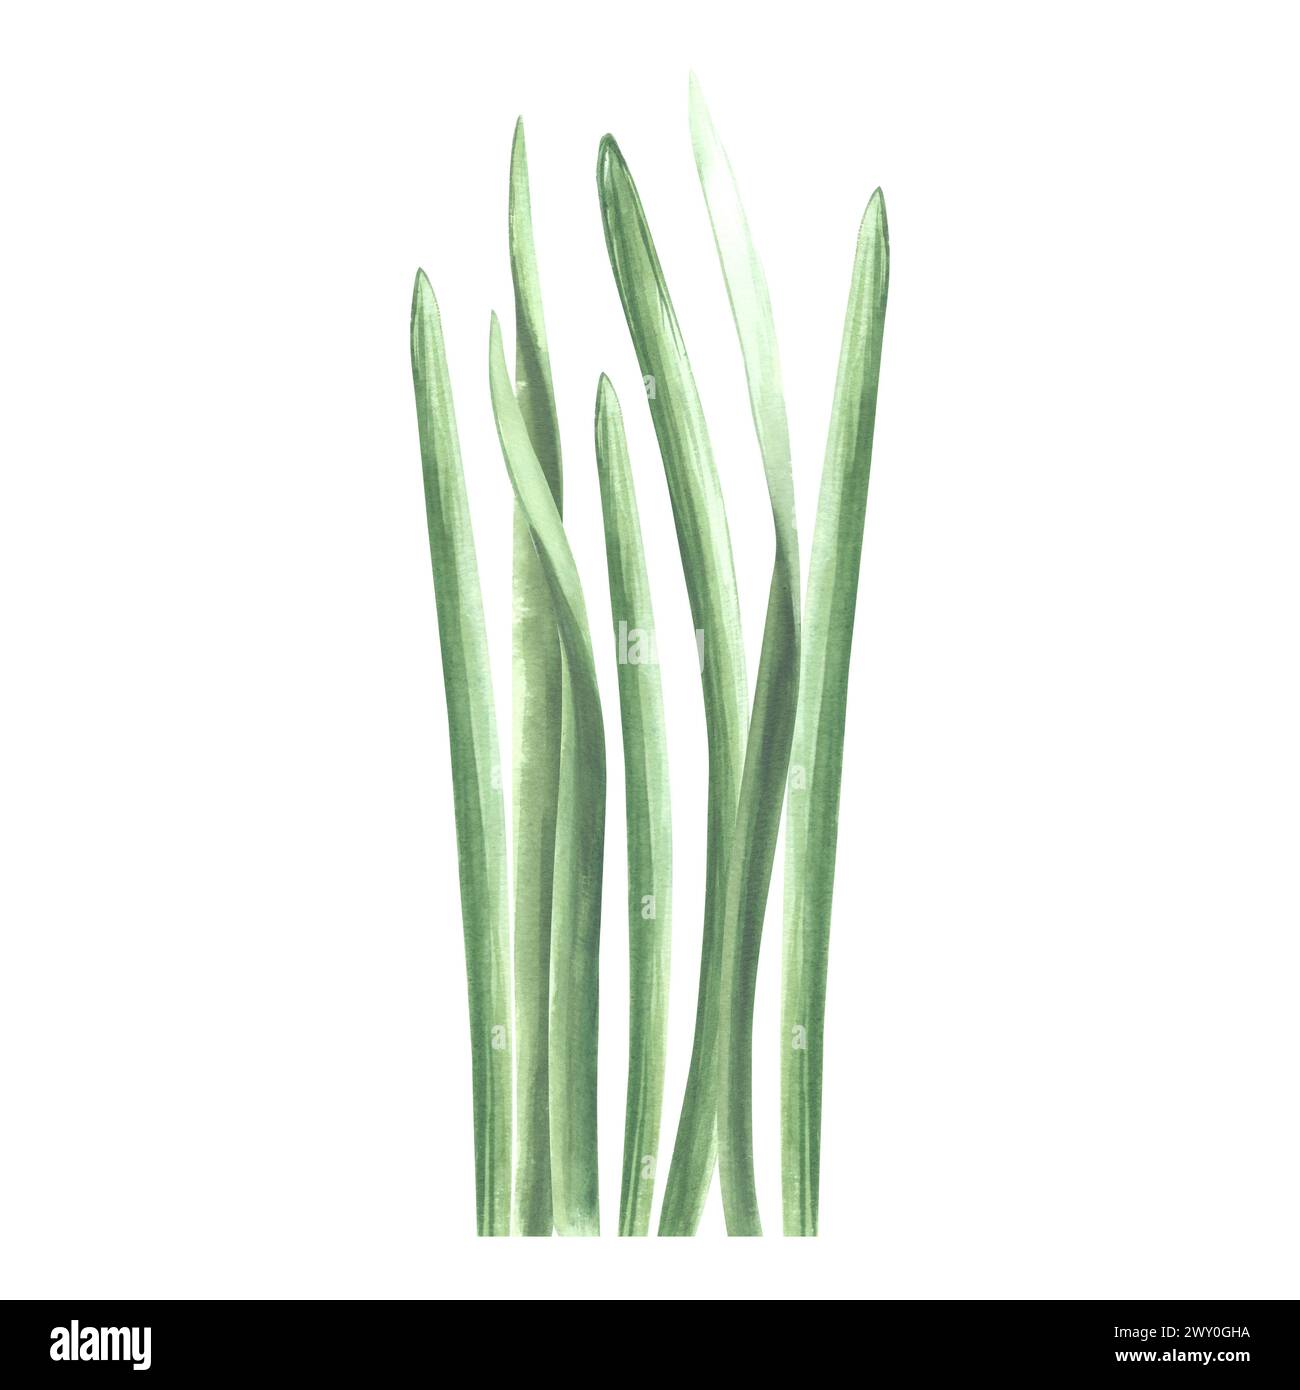 Ein Haufen grünes Gras. Isolierte handgezeichnete Aquarellillustration von Grün, Kraut. Zeichentrickwiesen-Pflanzenzeichnung. Botanische Vorlage für Begrüßung Stockfoto